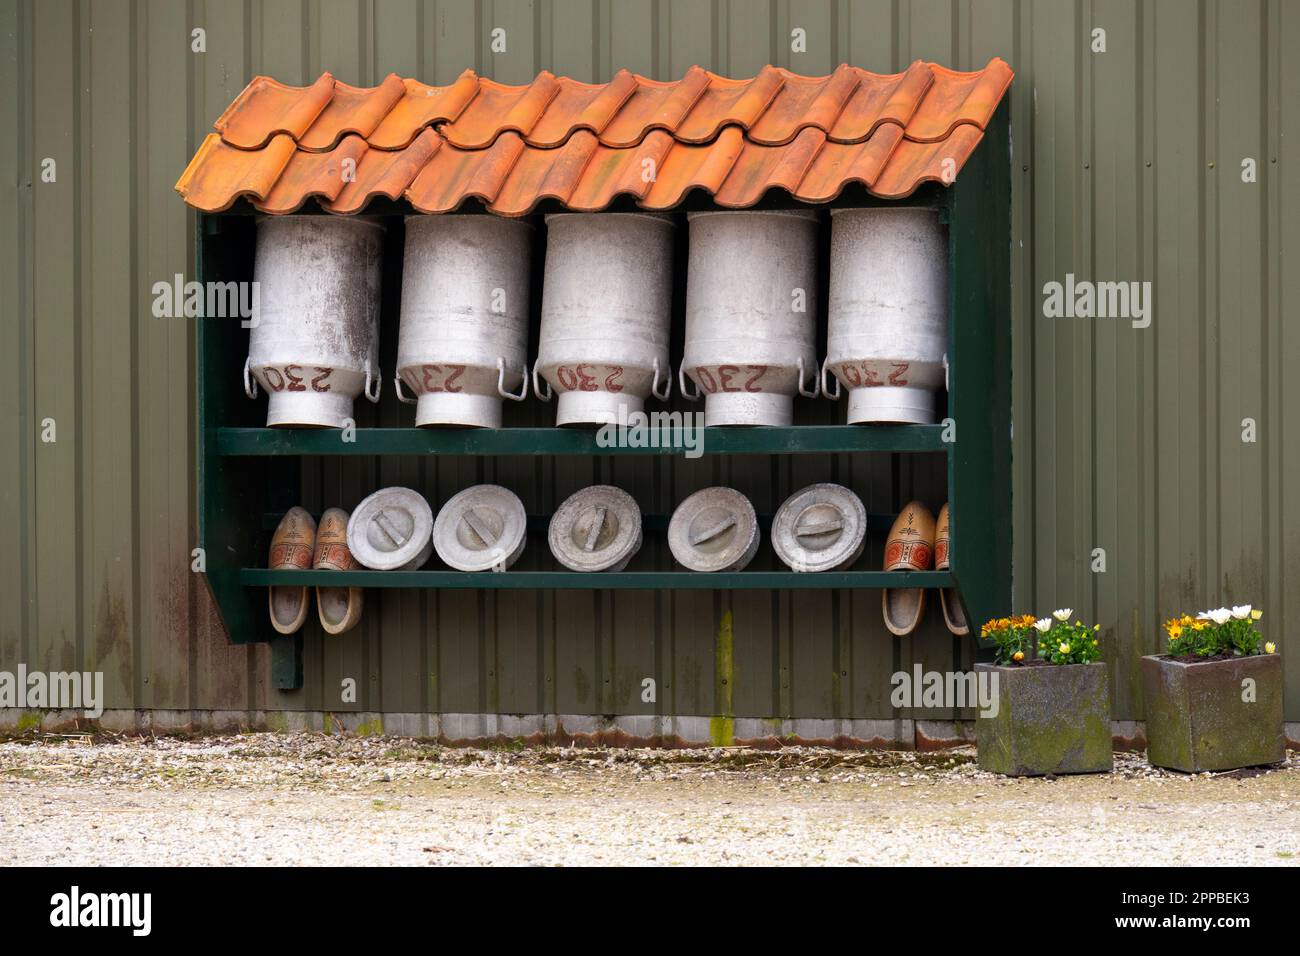 Typisches holländisches Bild leerer traditioneller Milchbehälter und Holzschuhe unter einem gefliesten Dach Stockfoto